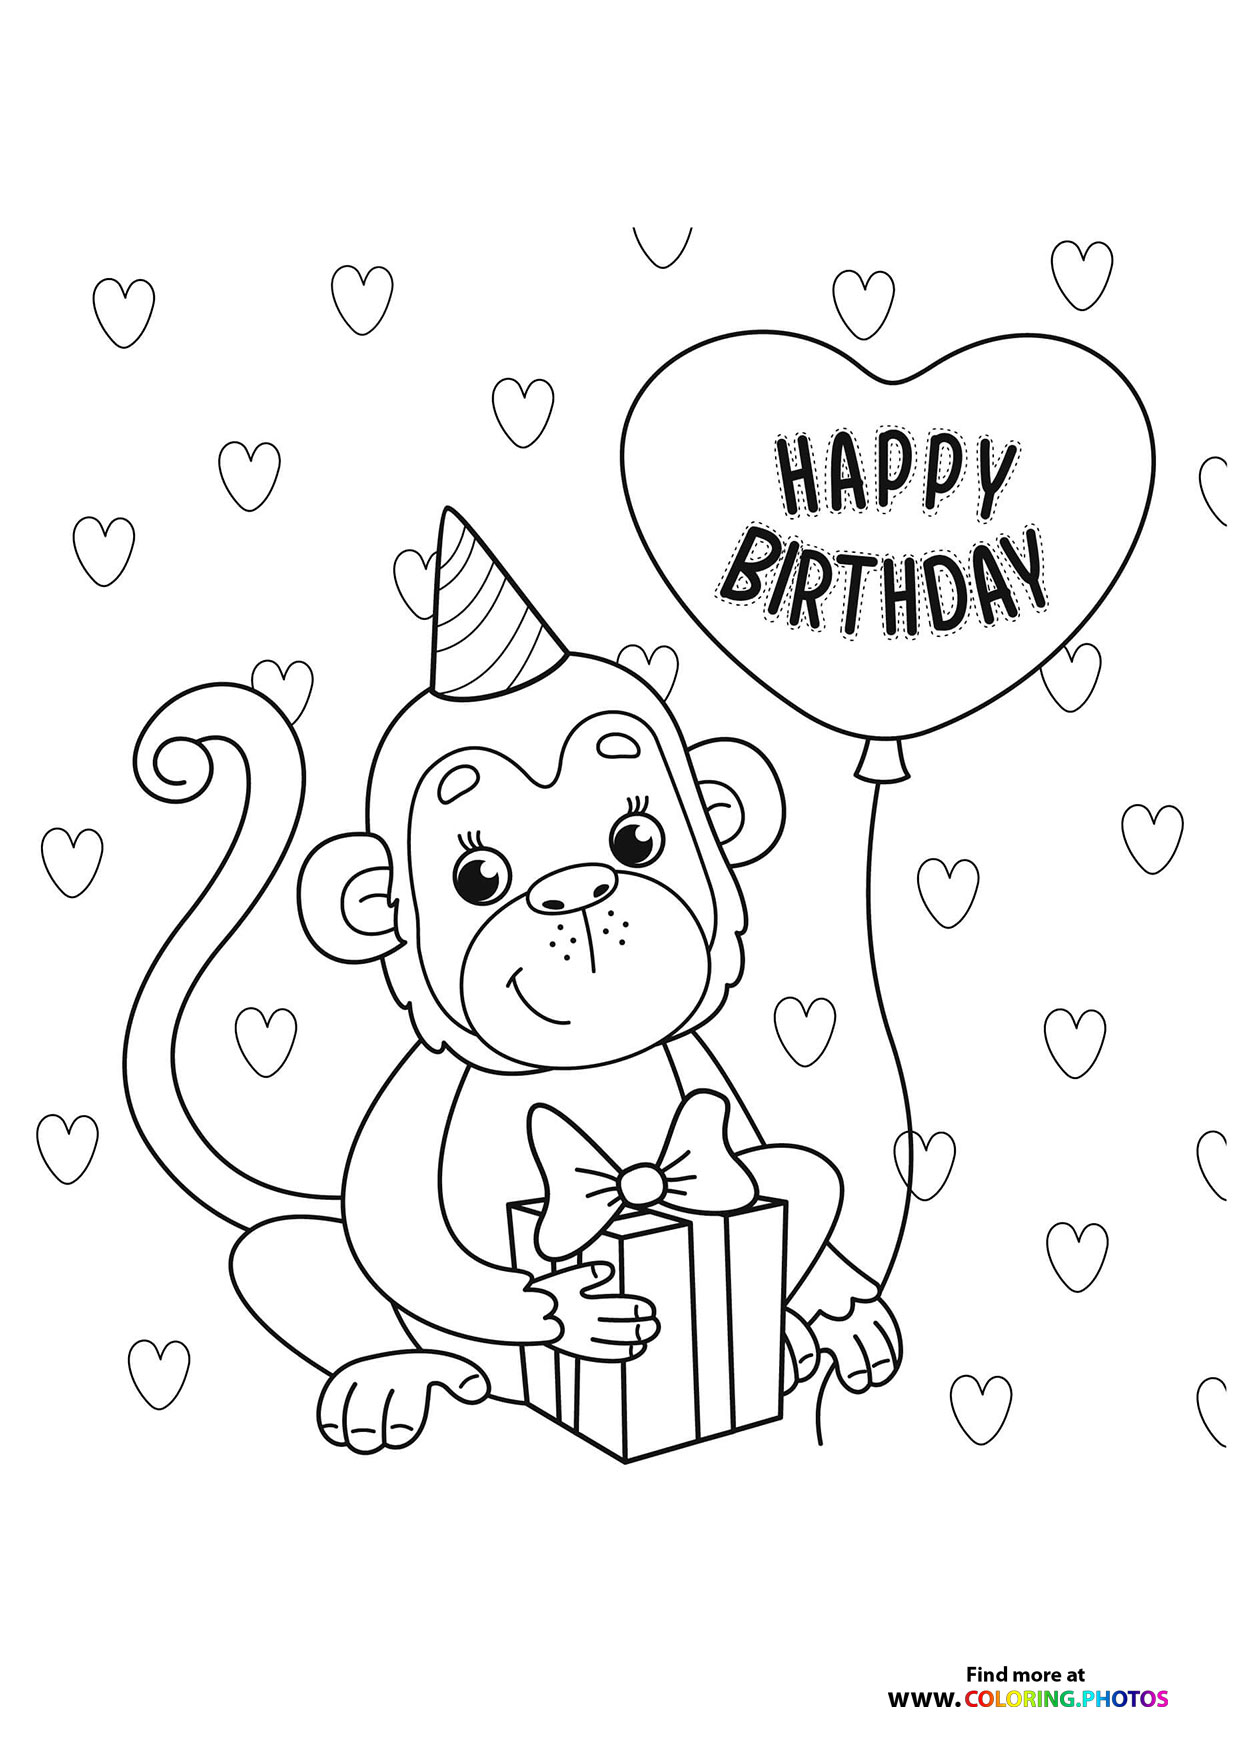 Birthday monkey